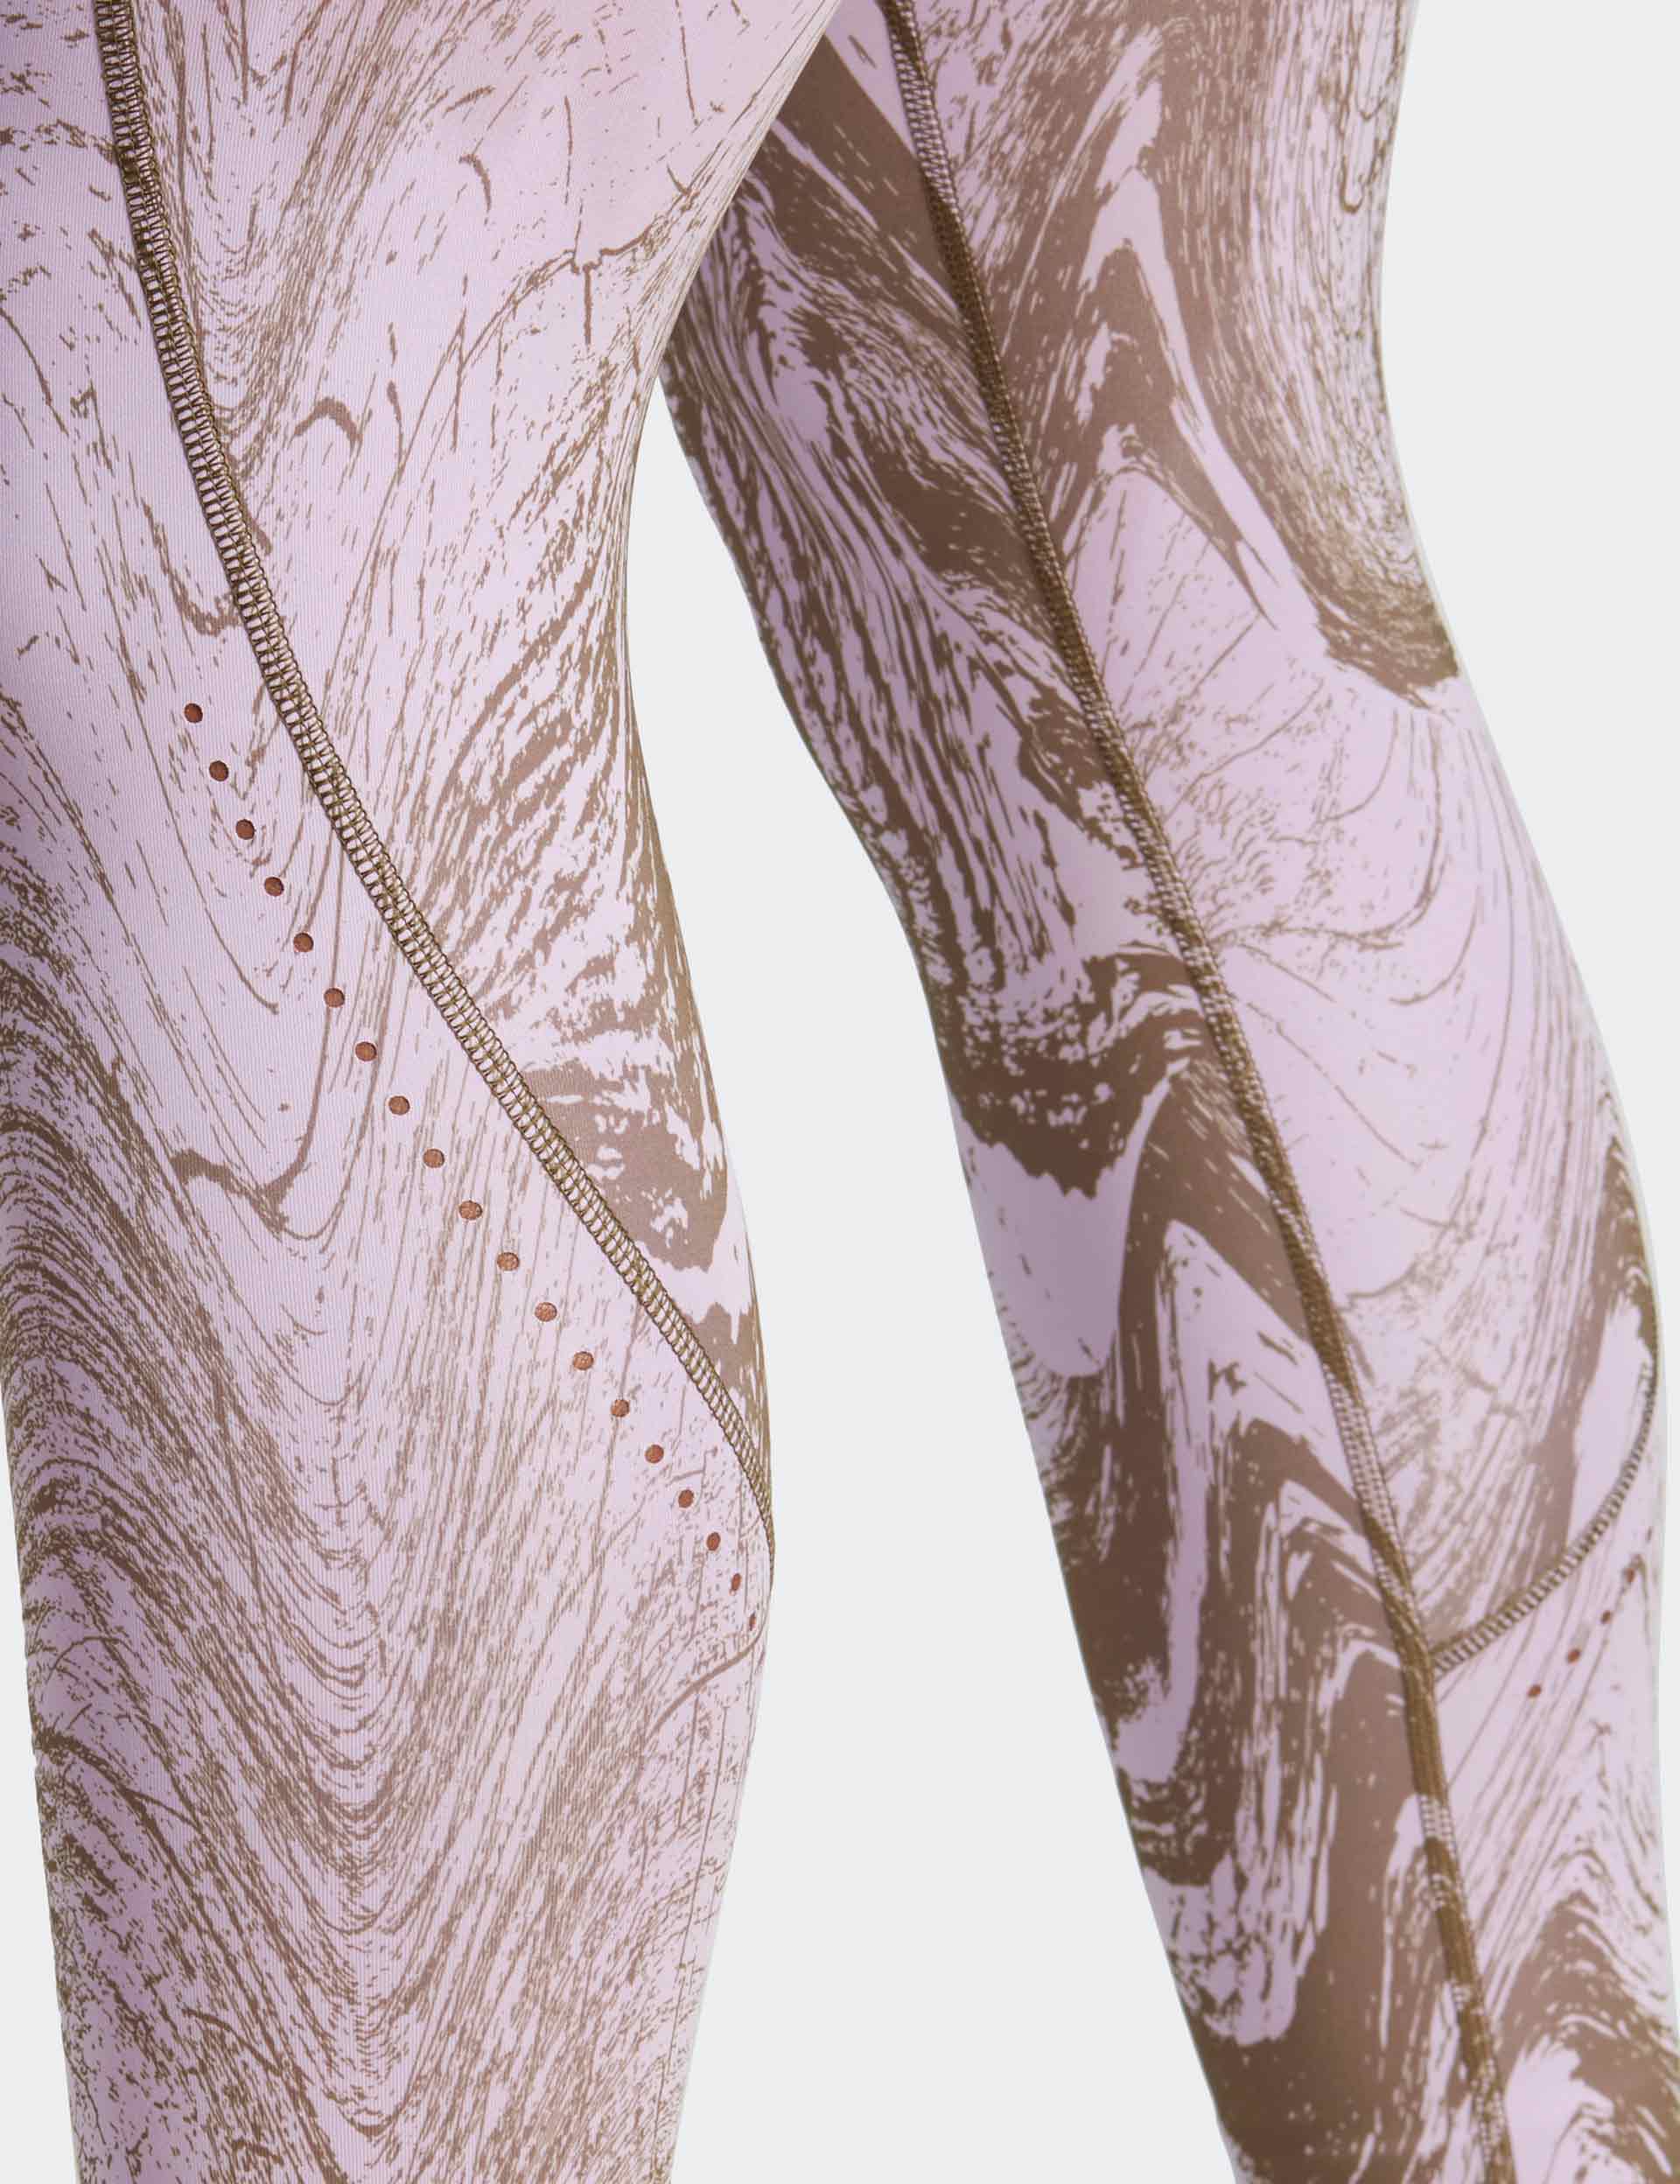 adidas by Stella McCartney graphic-print yoga leggings - Grey